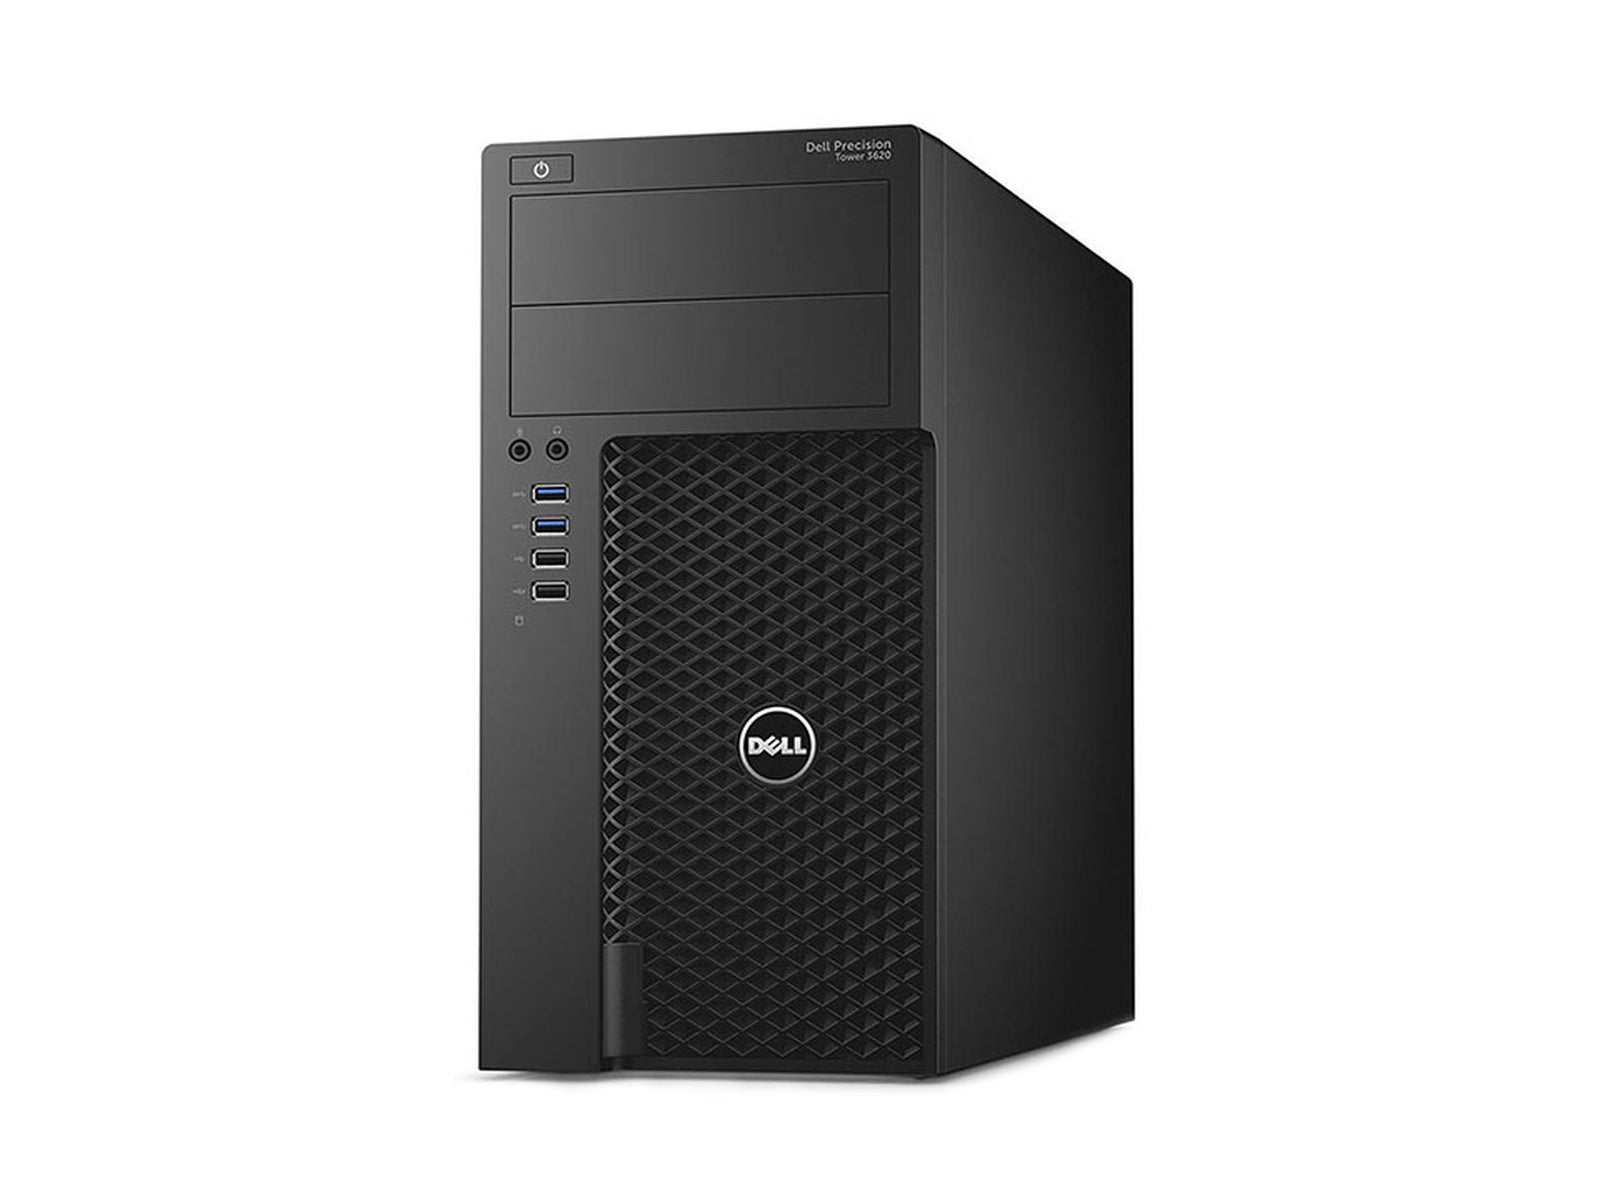 Dell Precision T1700 Server Workstation | Intel Xeon E3-1220 V5 @ 3.40GHz  | 16GB ECC DDR4 | RAID1 (2 x 500GB HDD) | Quadro K420 2GB | Windows Server 2008 R2 Monitors.com 